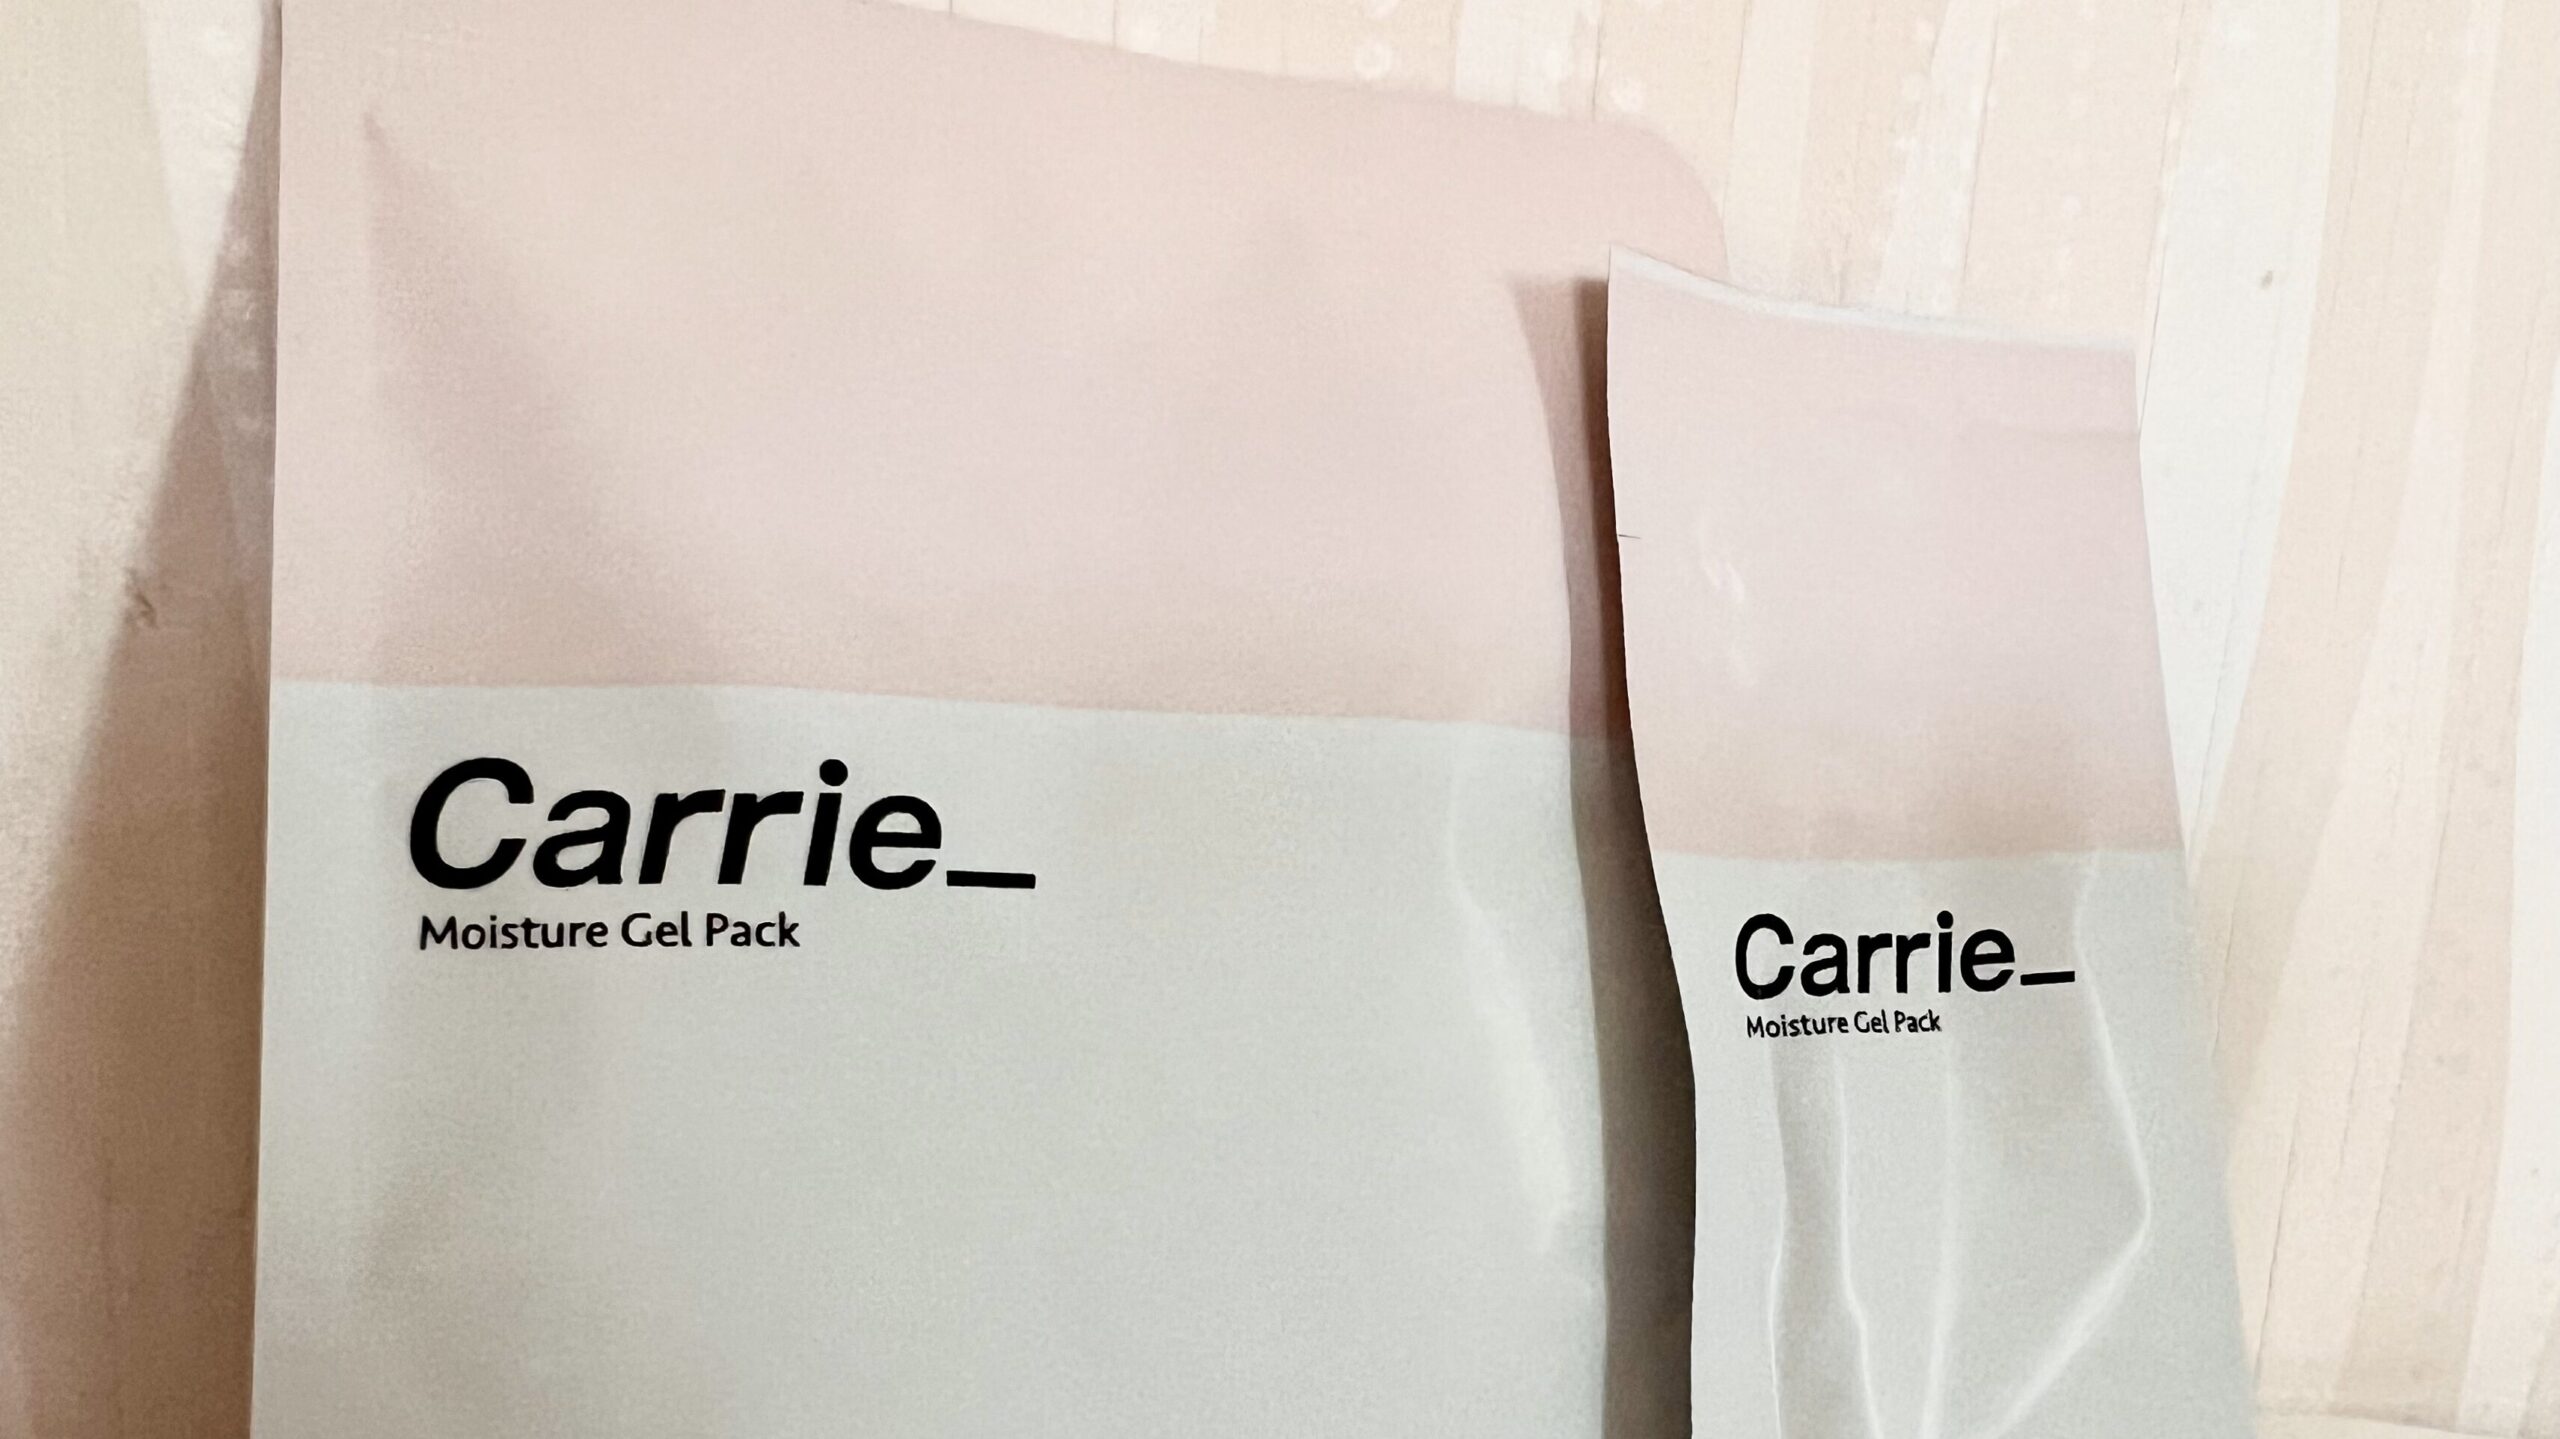 川村真木子さんが開発した炭酸パック「Carrie」です。